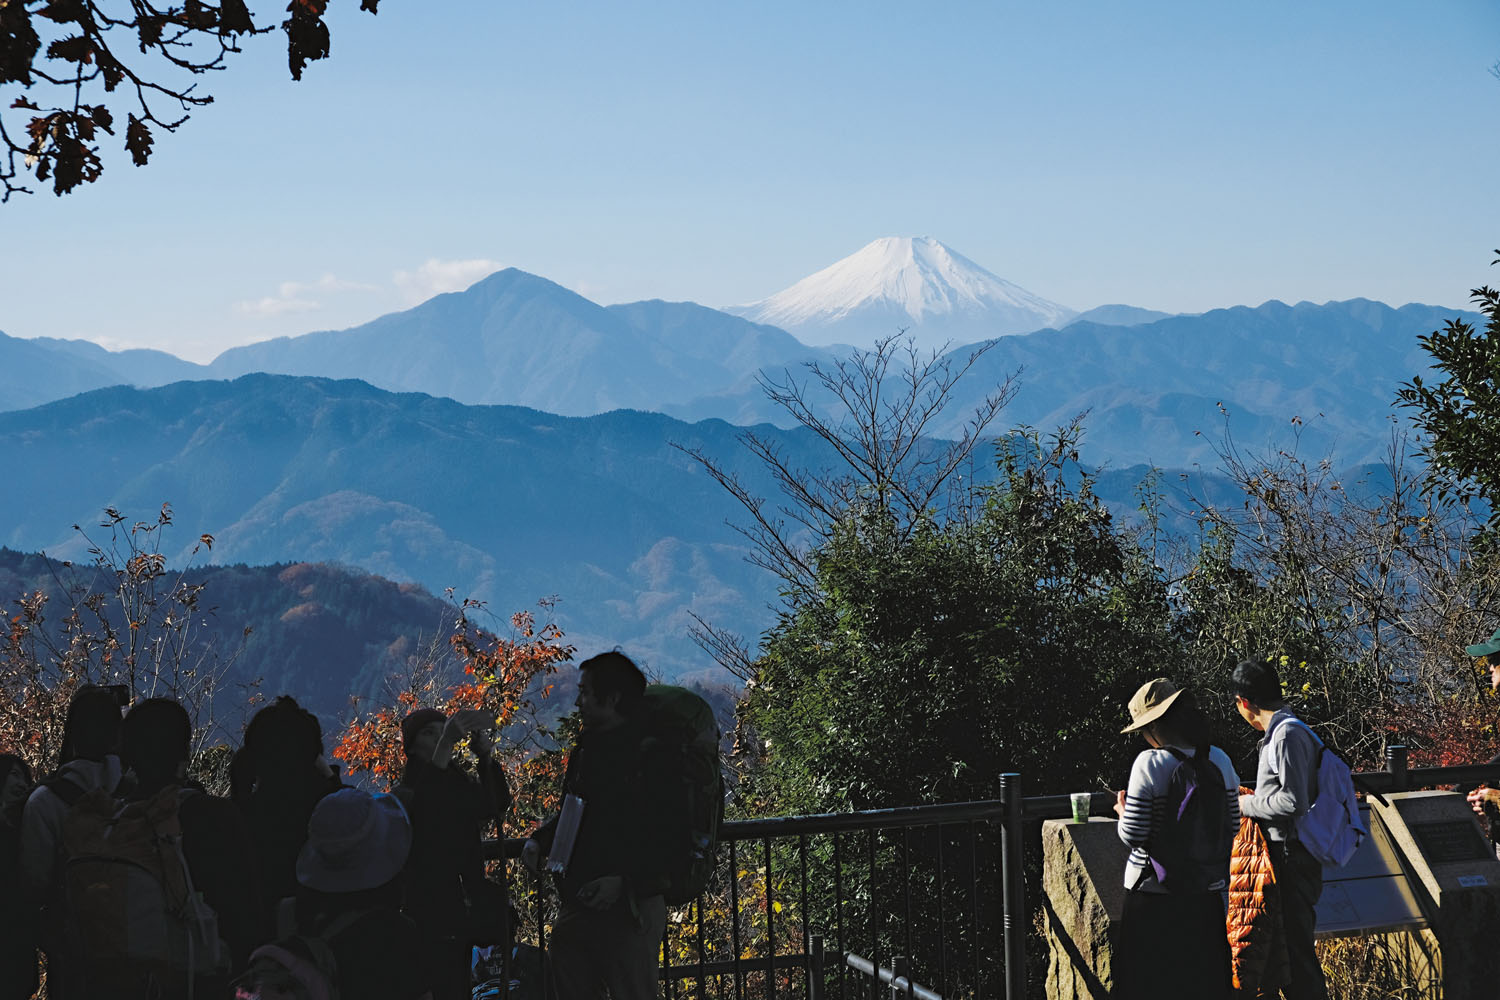 高尾山山頂の展望台からの眺望。富士山の左手の高い山は大室山（おおむろやま）。石老山（せきろうざん）がその下に見える。